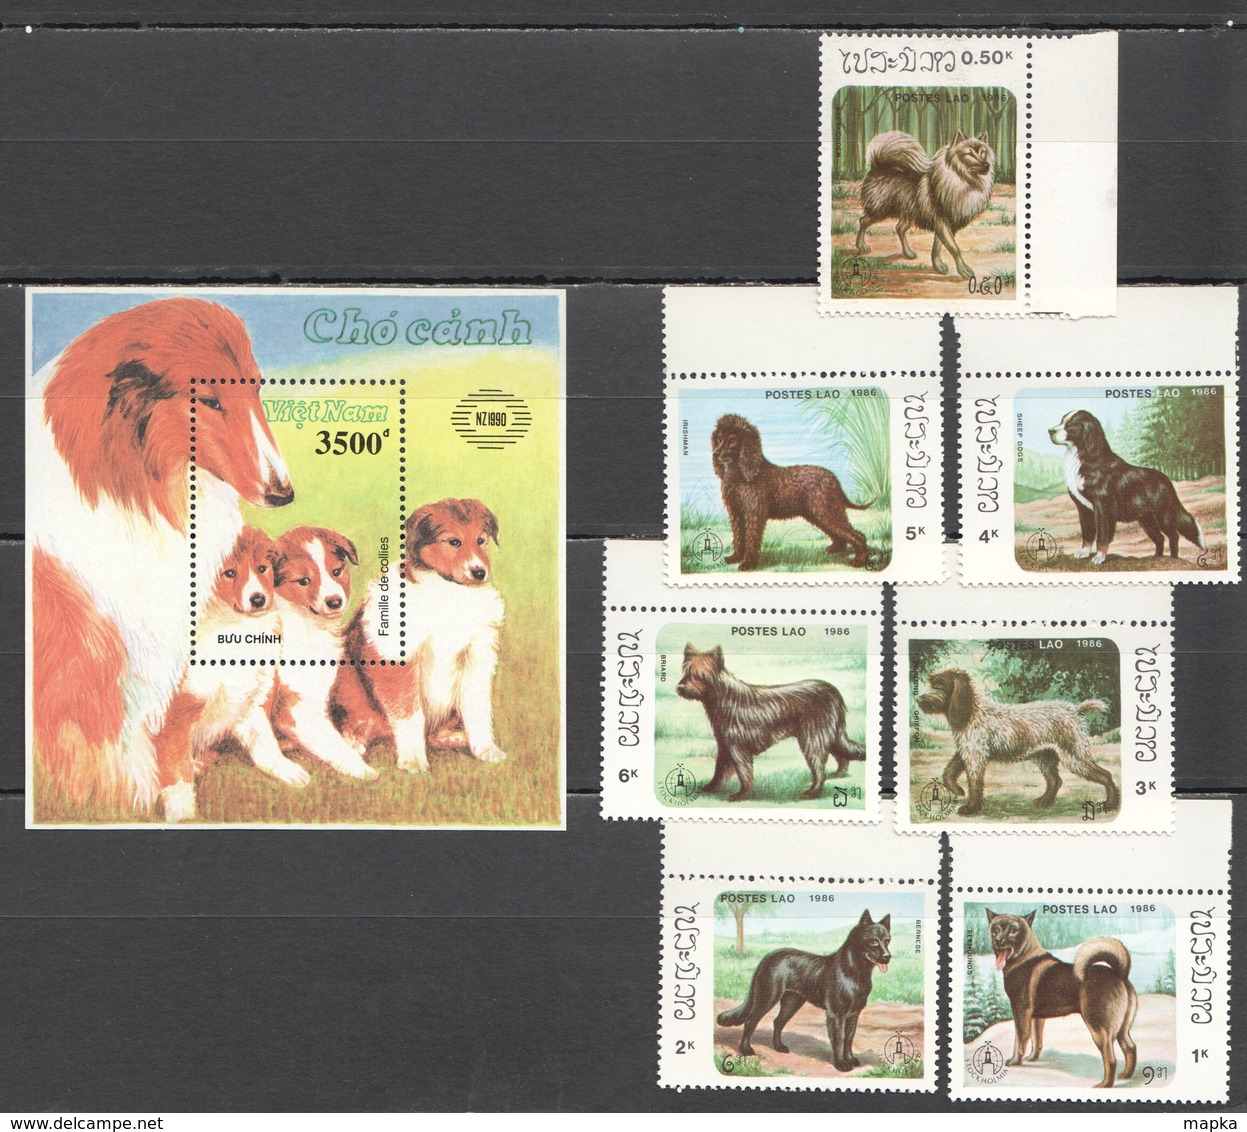 O1139 1986,1990 POSTES LAO,VIETNAM FAUNA PETS DOGS 1BL+1SET MNH - Perros